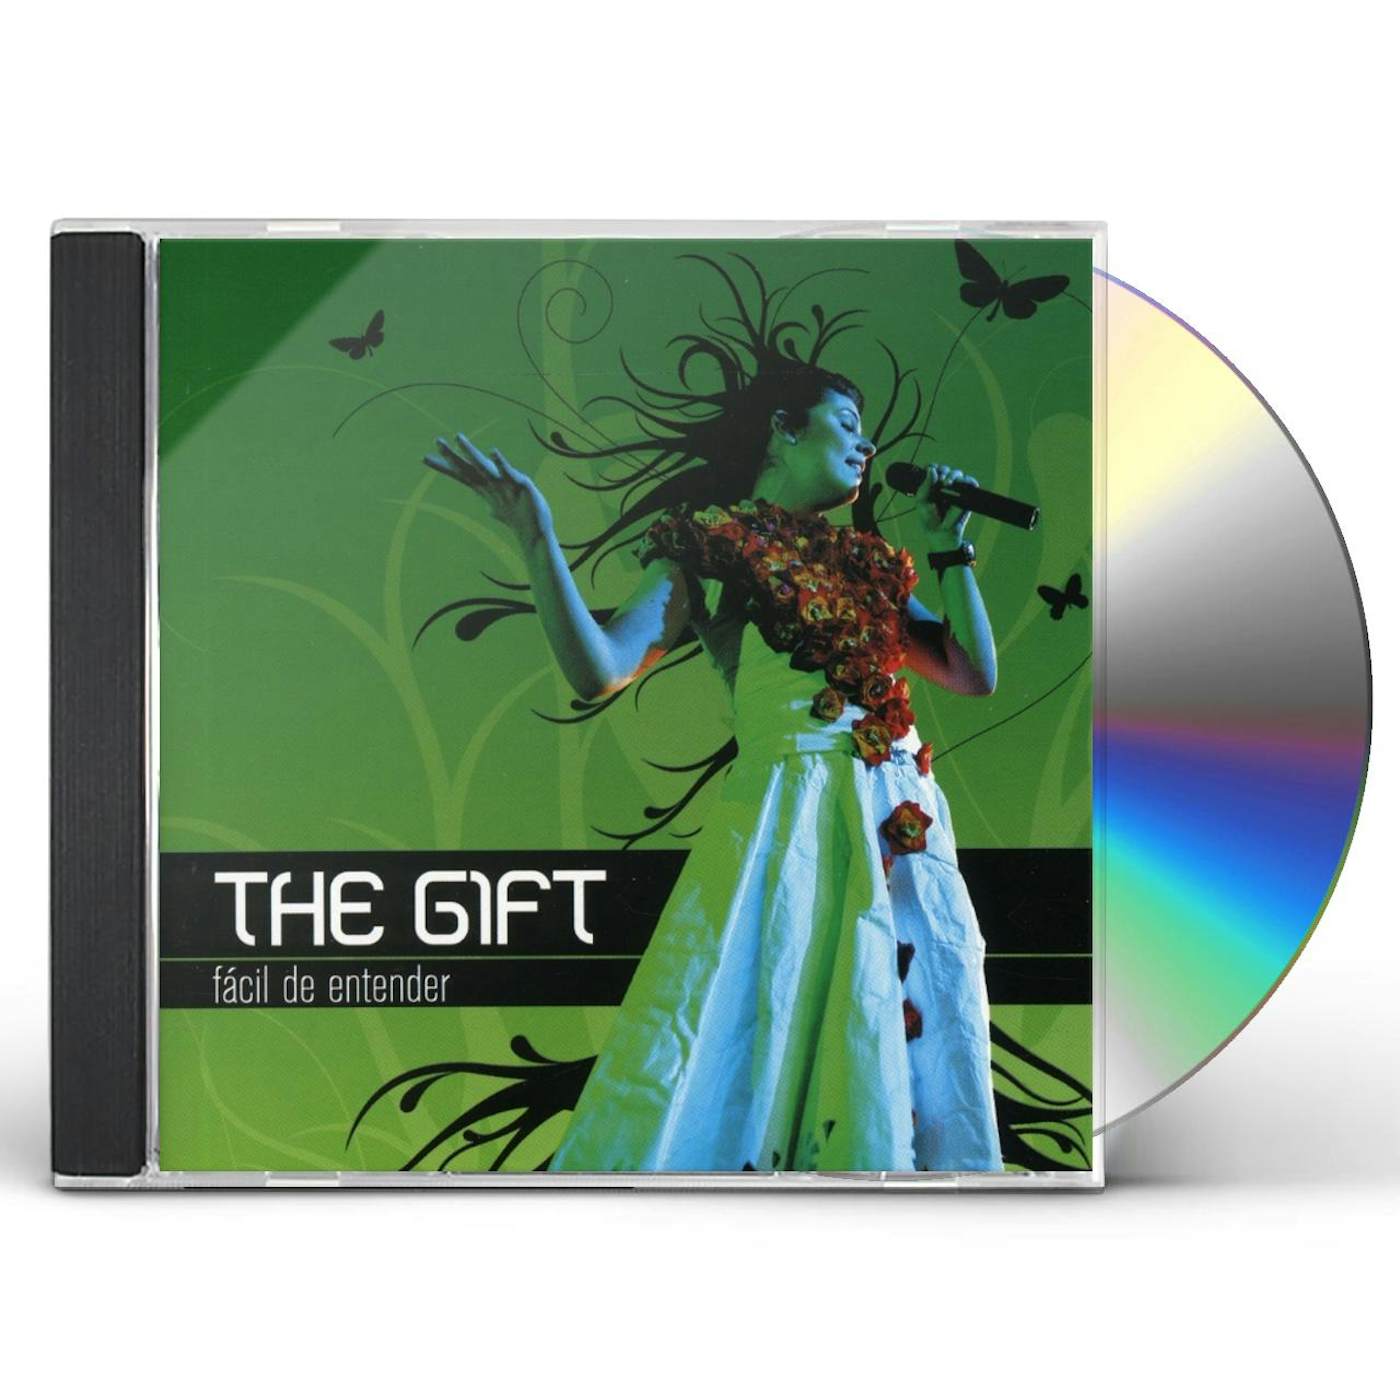 The Gift FACIL DE ENTENDER CD